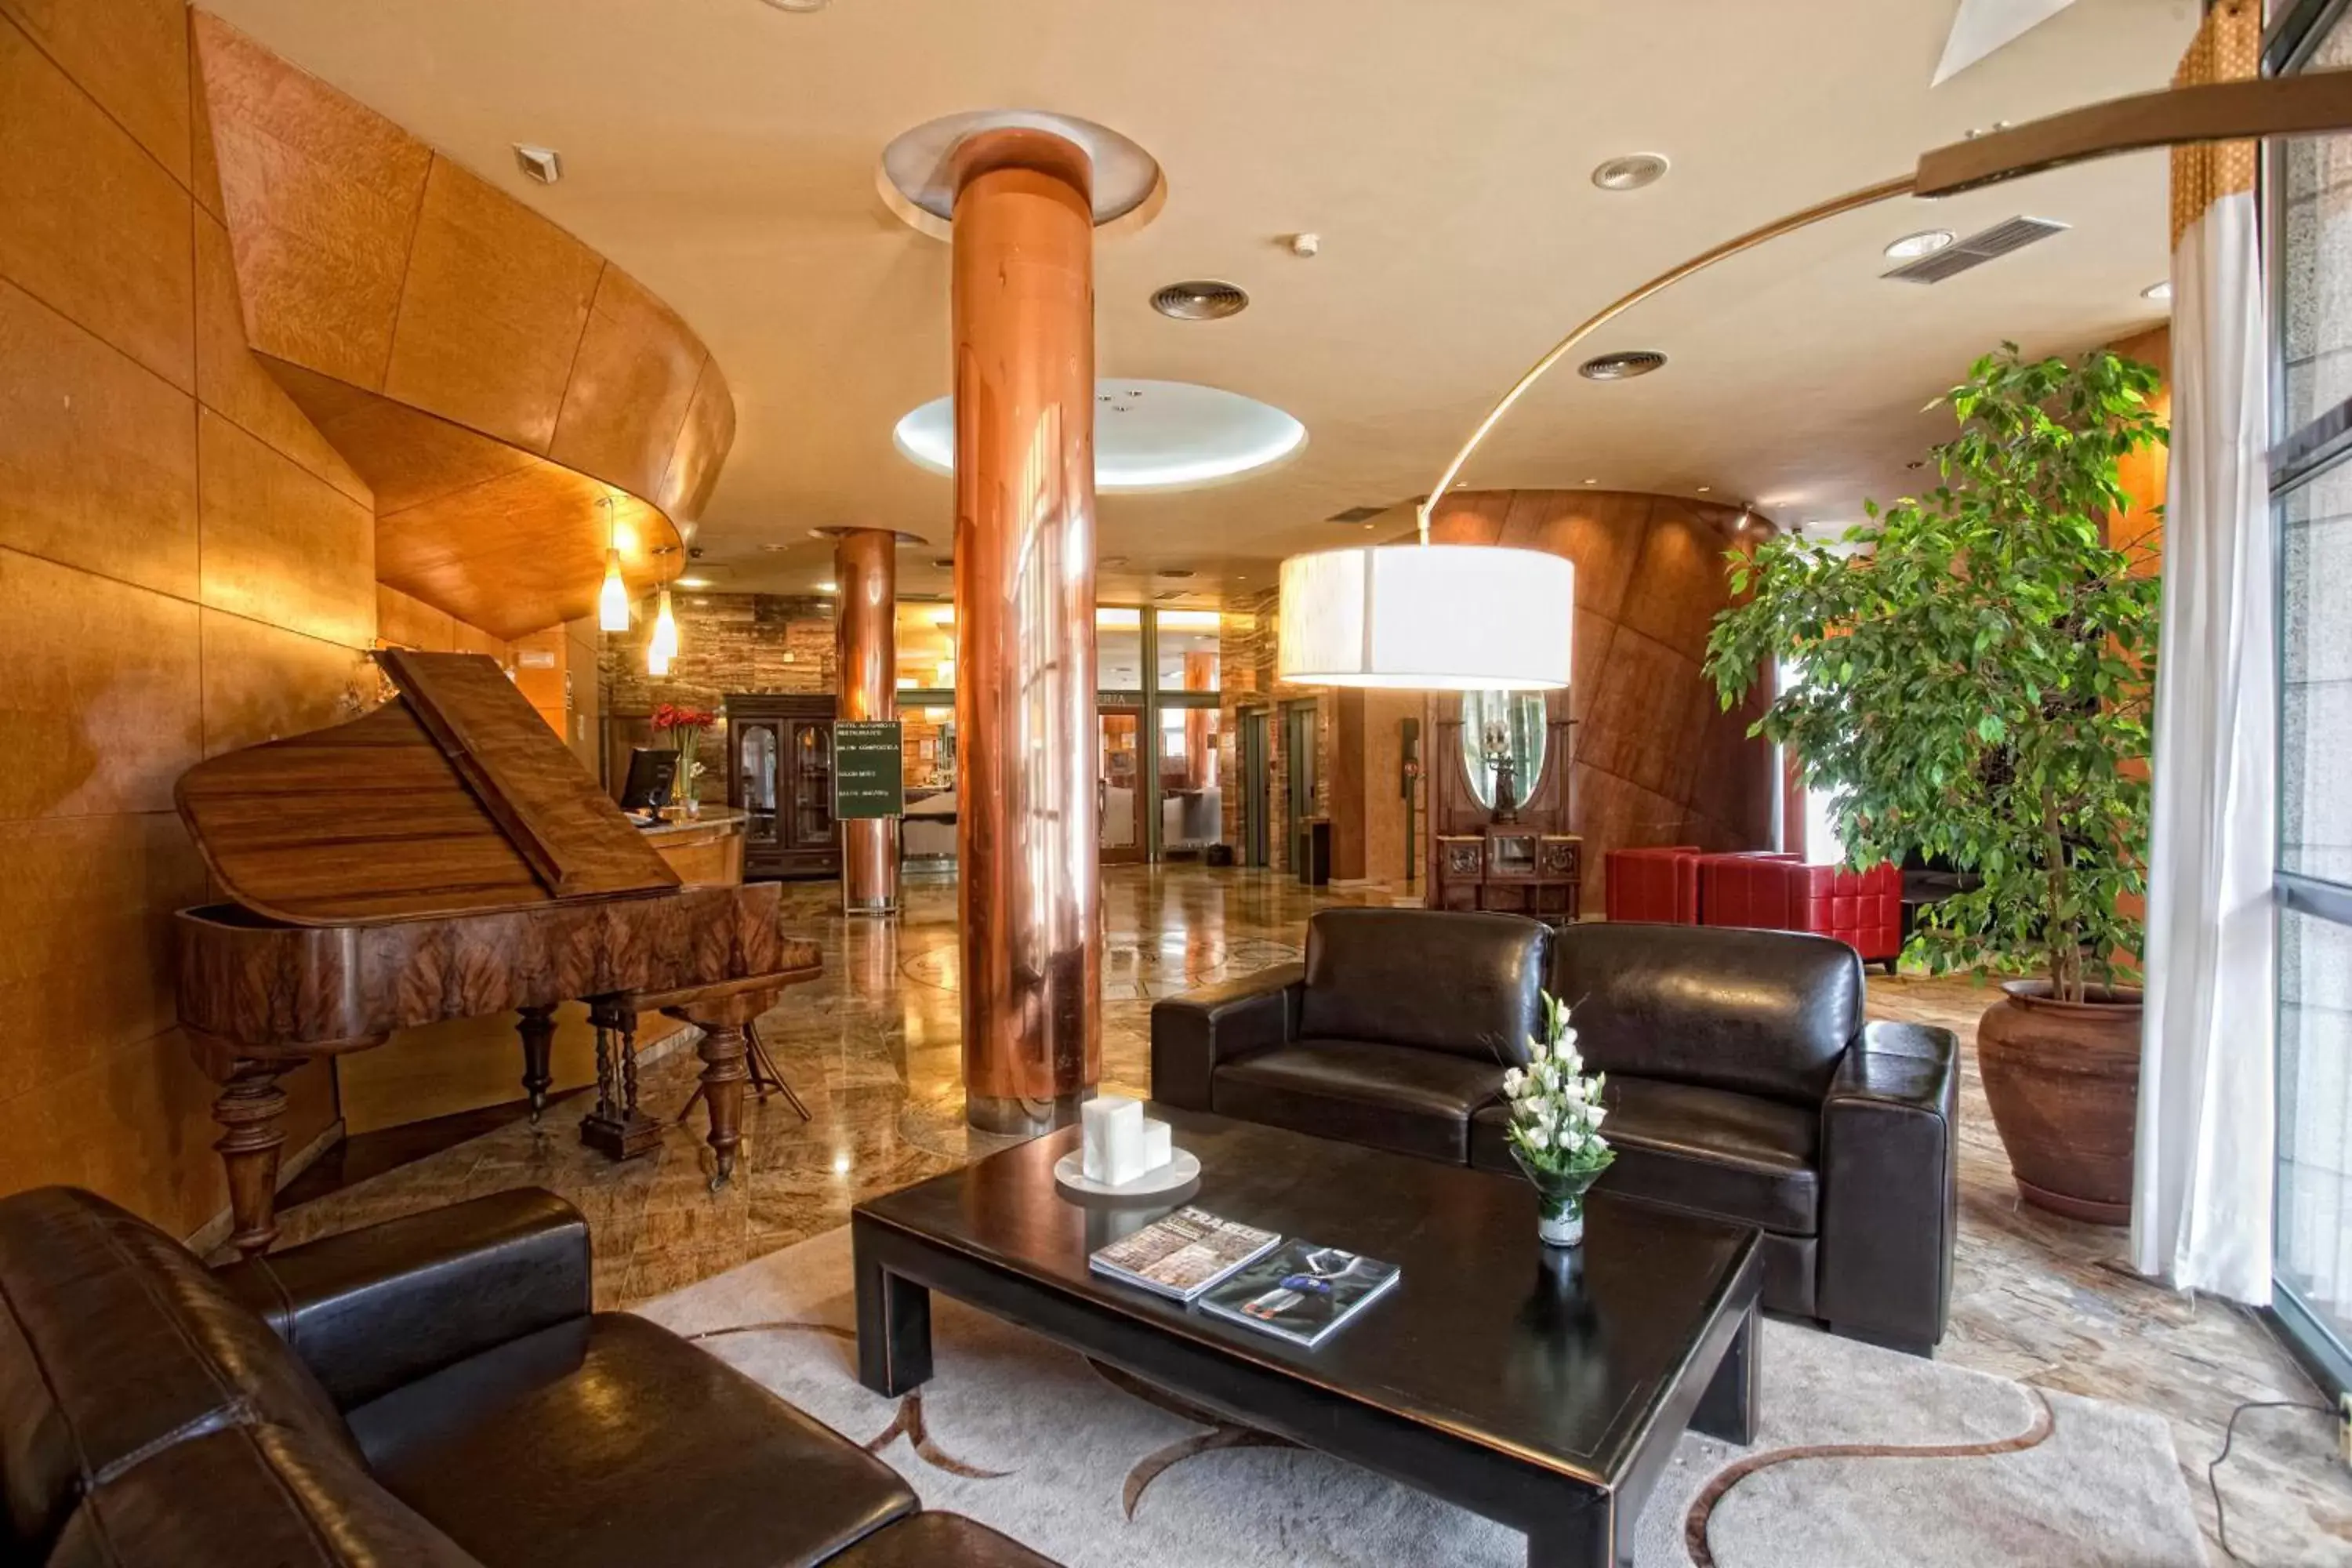 Lobby or reception, Lobby/Reception in Hotel Alfonso IX